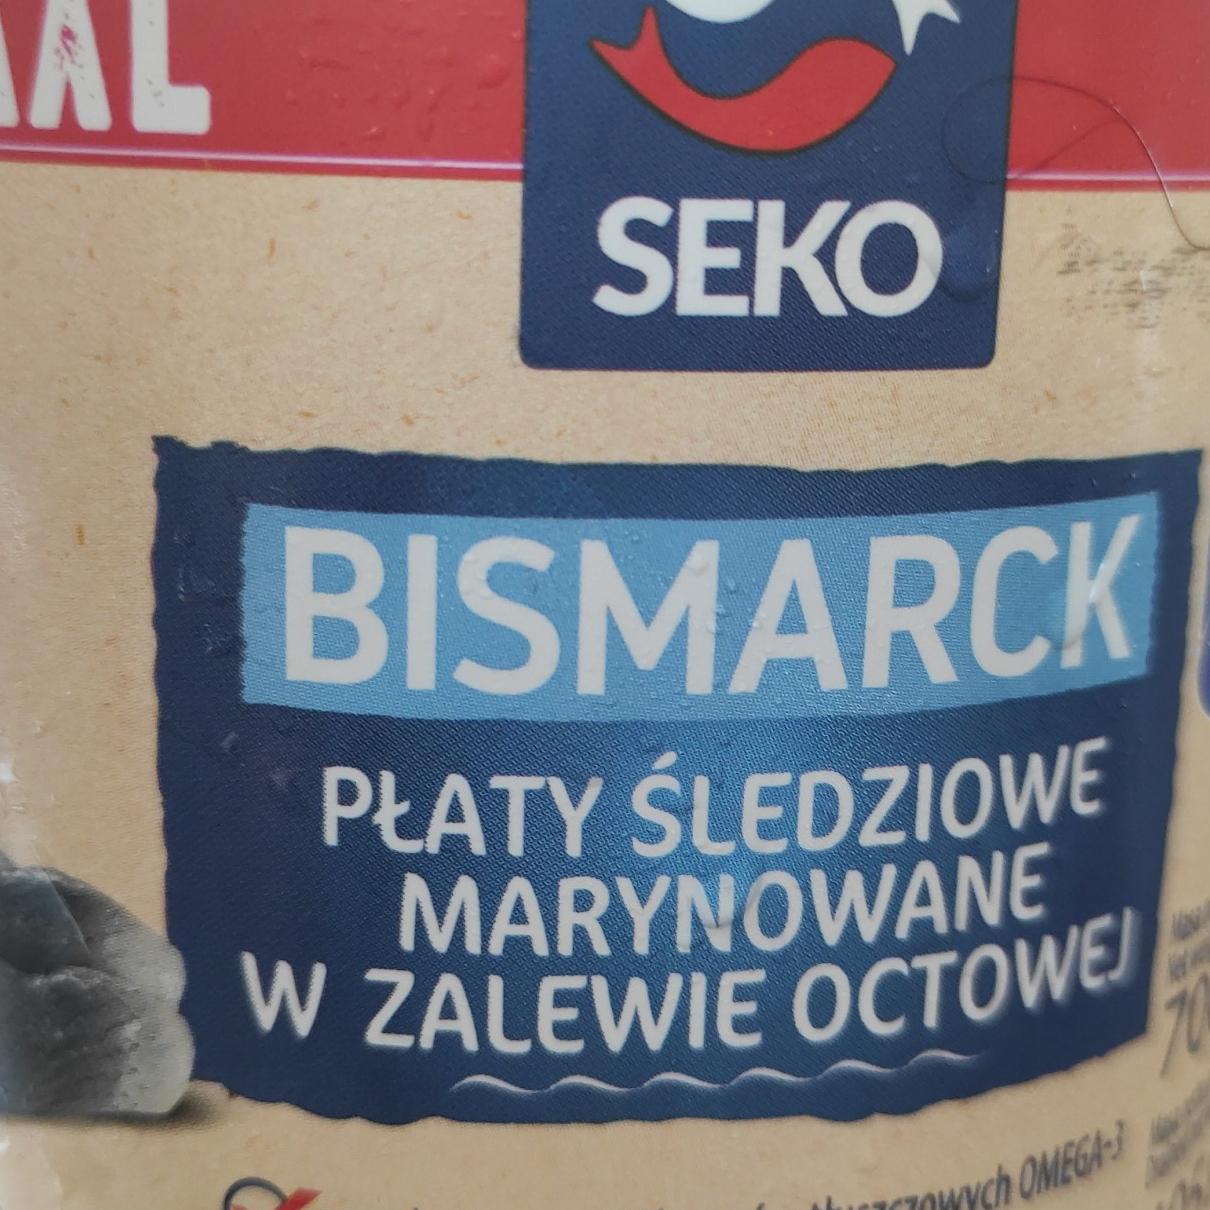 Zdjęcia - Bismarck Płaty śledziowe marynowane w zalewie octowej Seko